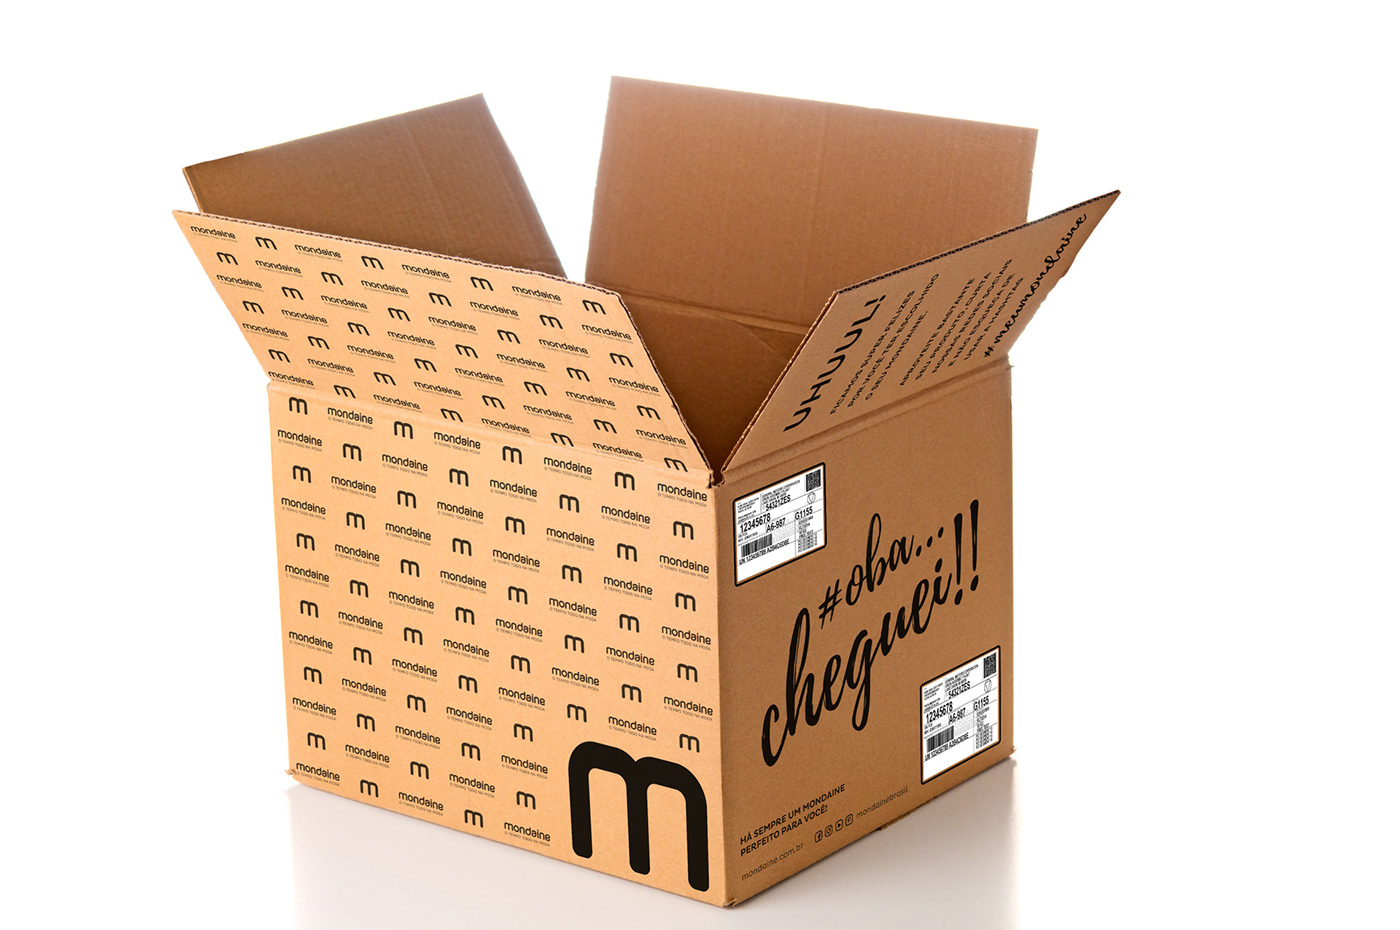 Image may contain: box, carton and cardboard